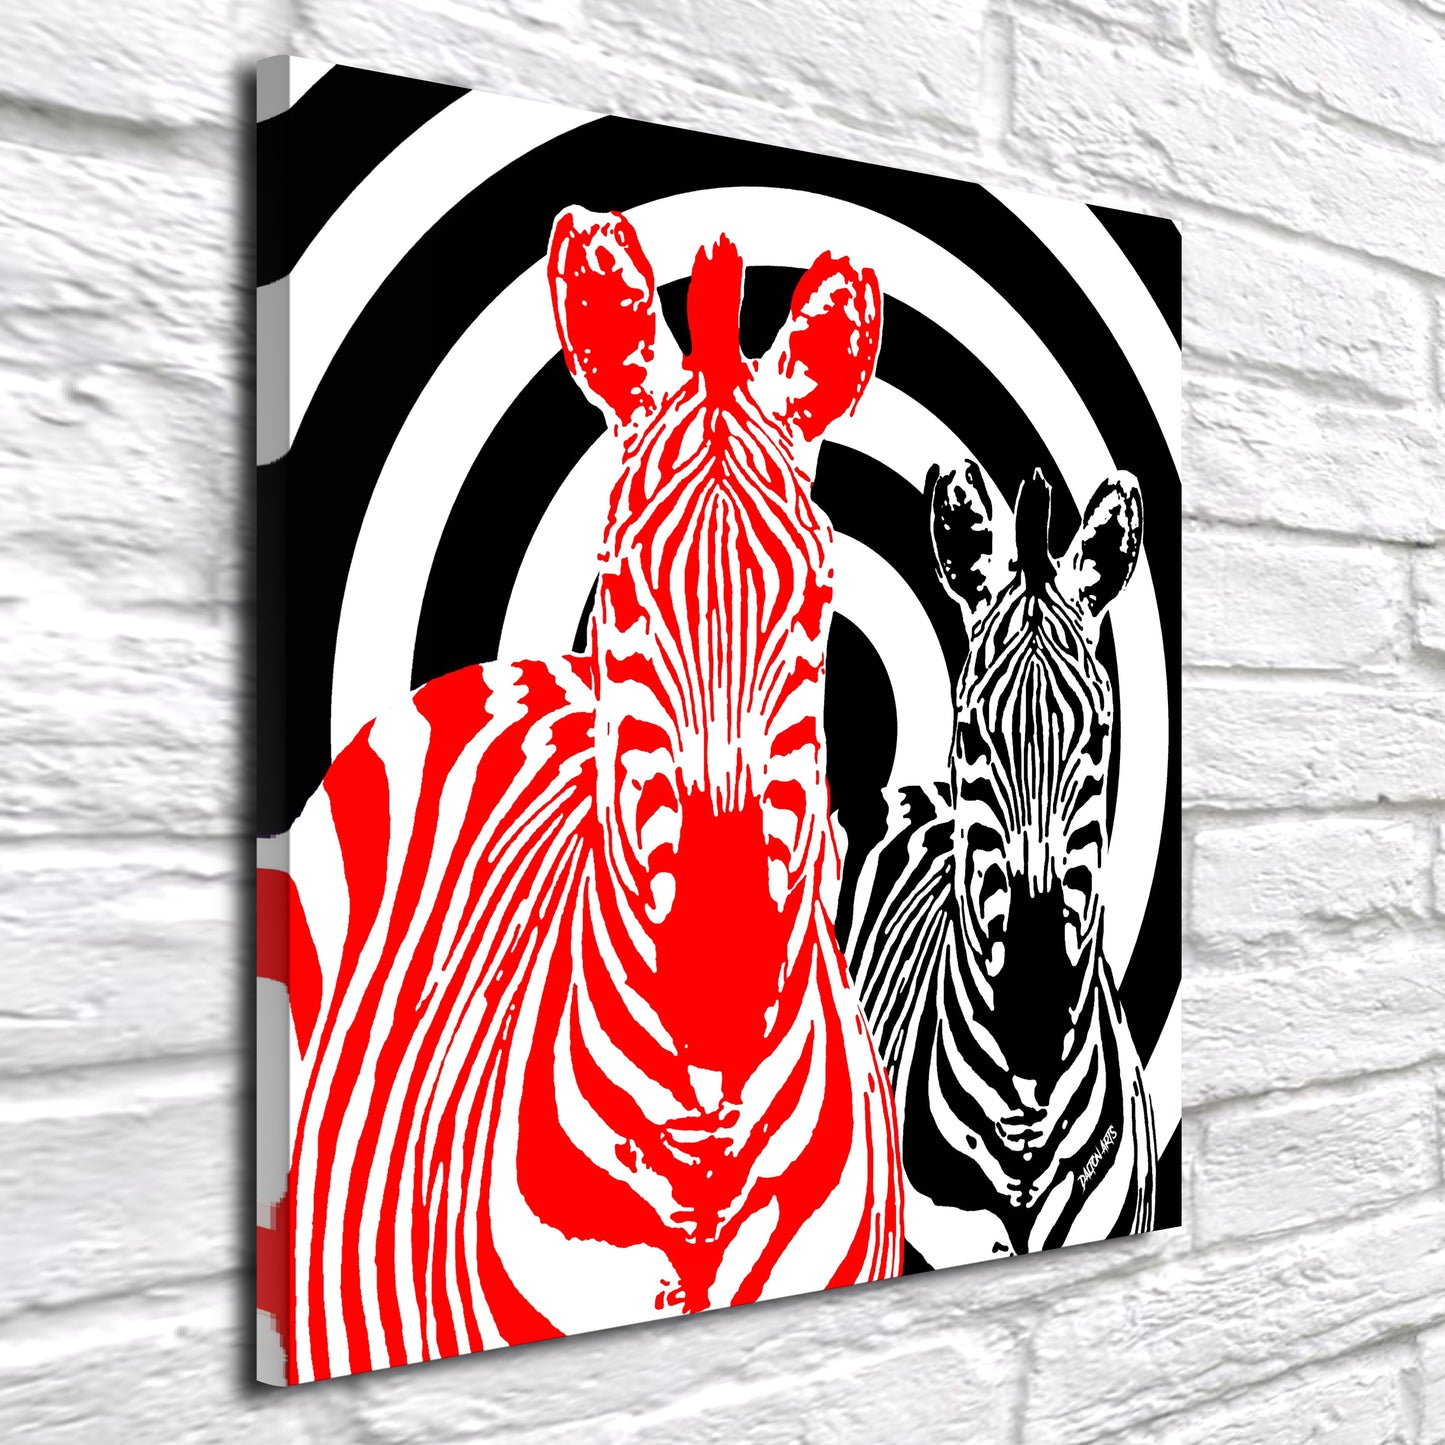 Zebra Pop Art